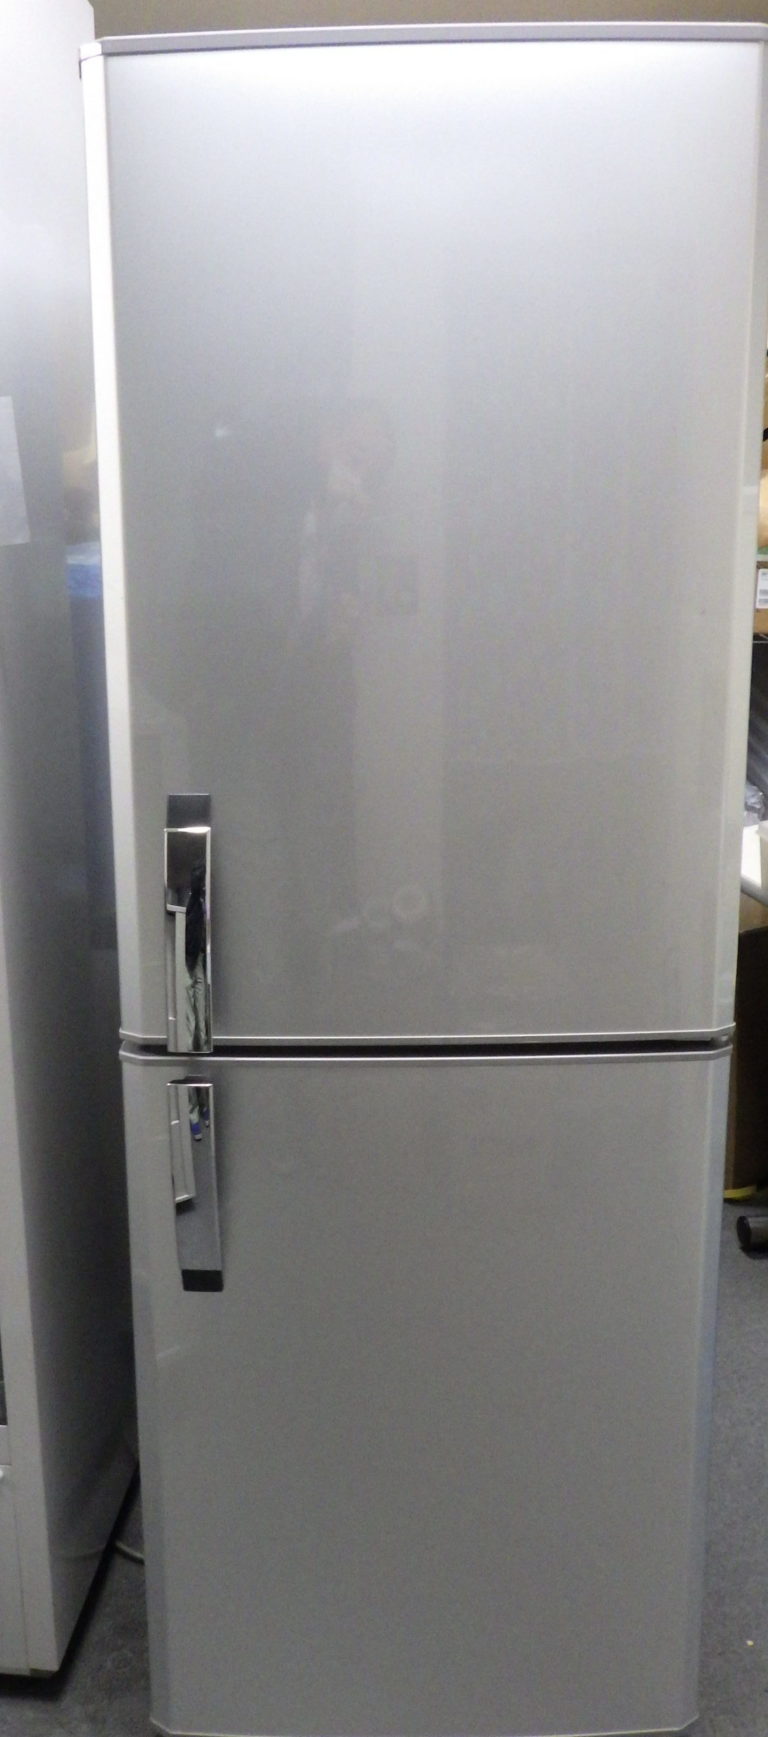 タイプ冷凍冷蔵庫【Mitsubishi】冷蔵庫 MR-H26M-W 256L 清掃除菌済み 